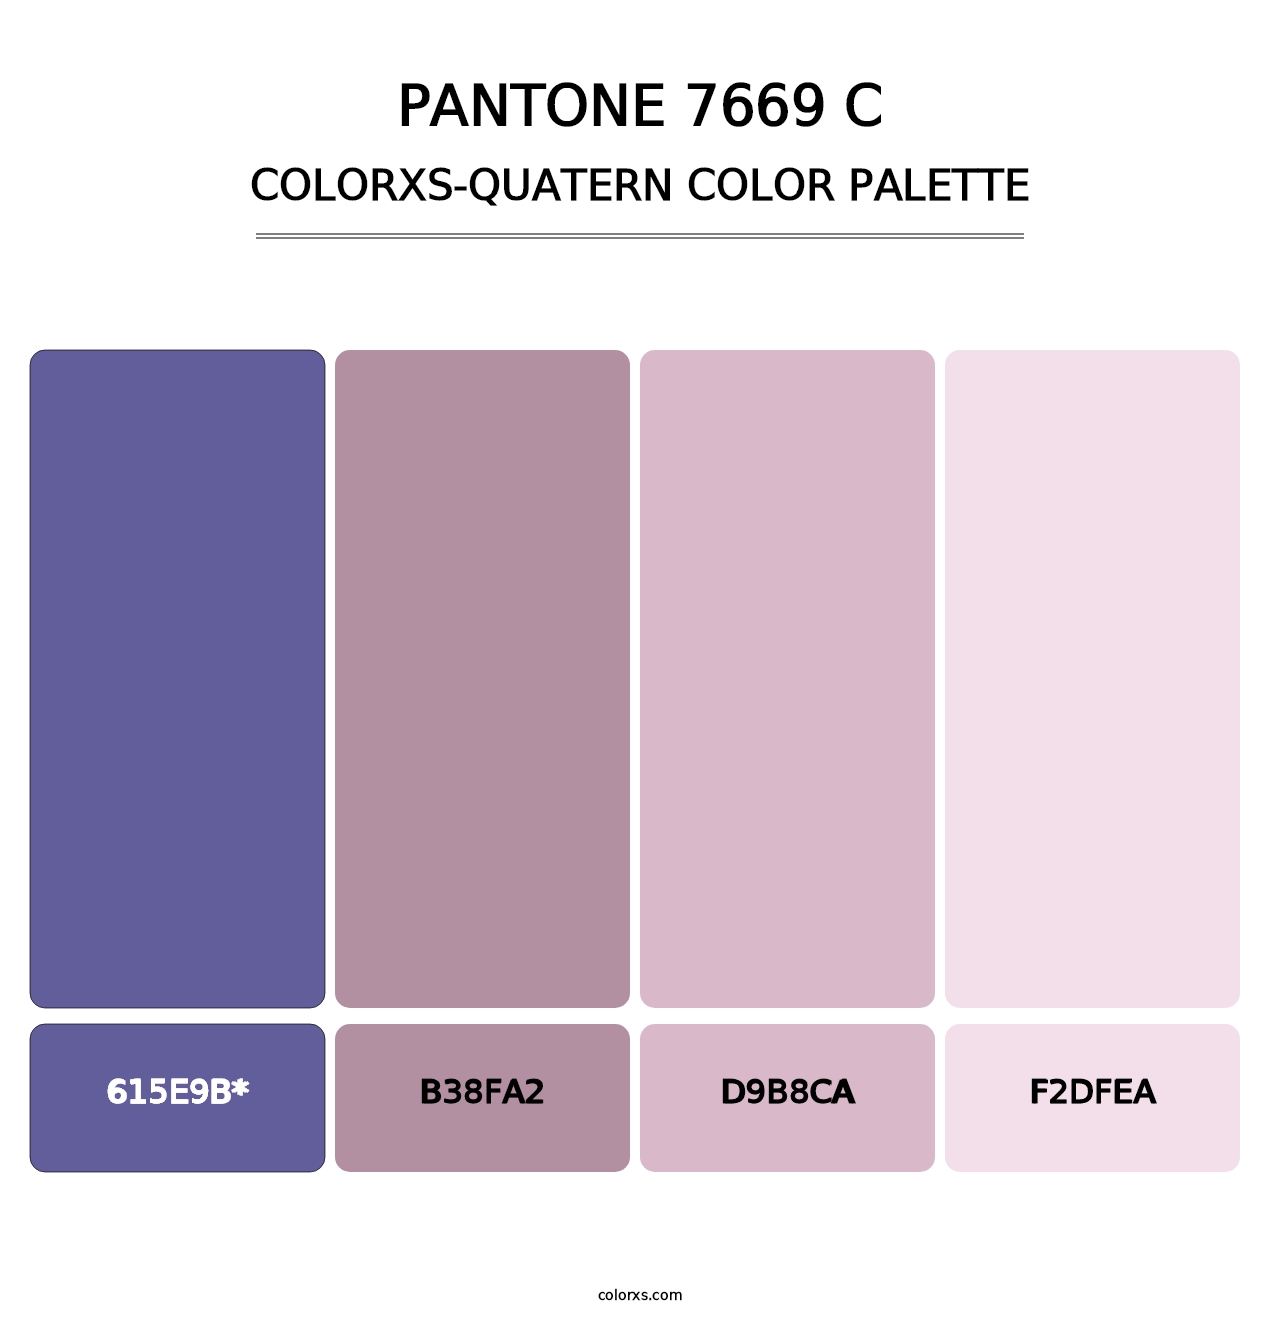 PANTONE 7669 C - Colorxs Quatern Palette